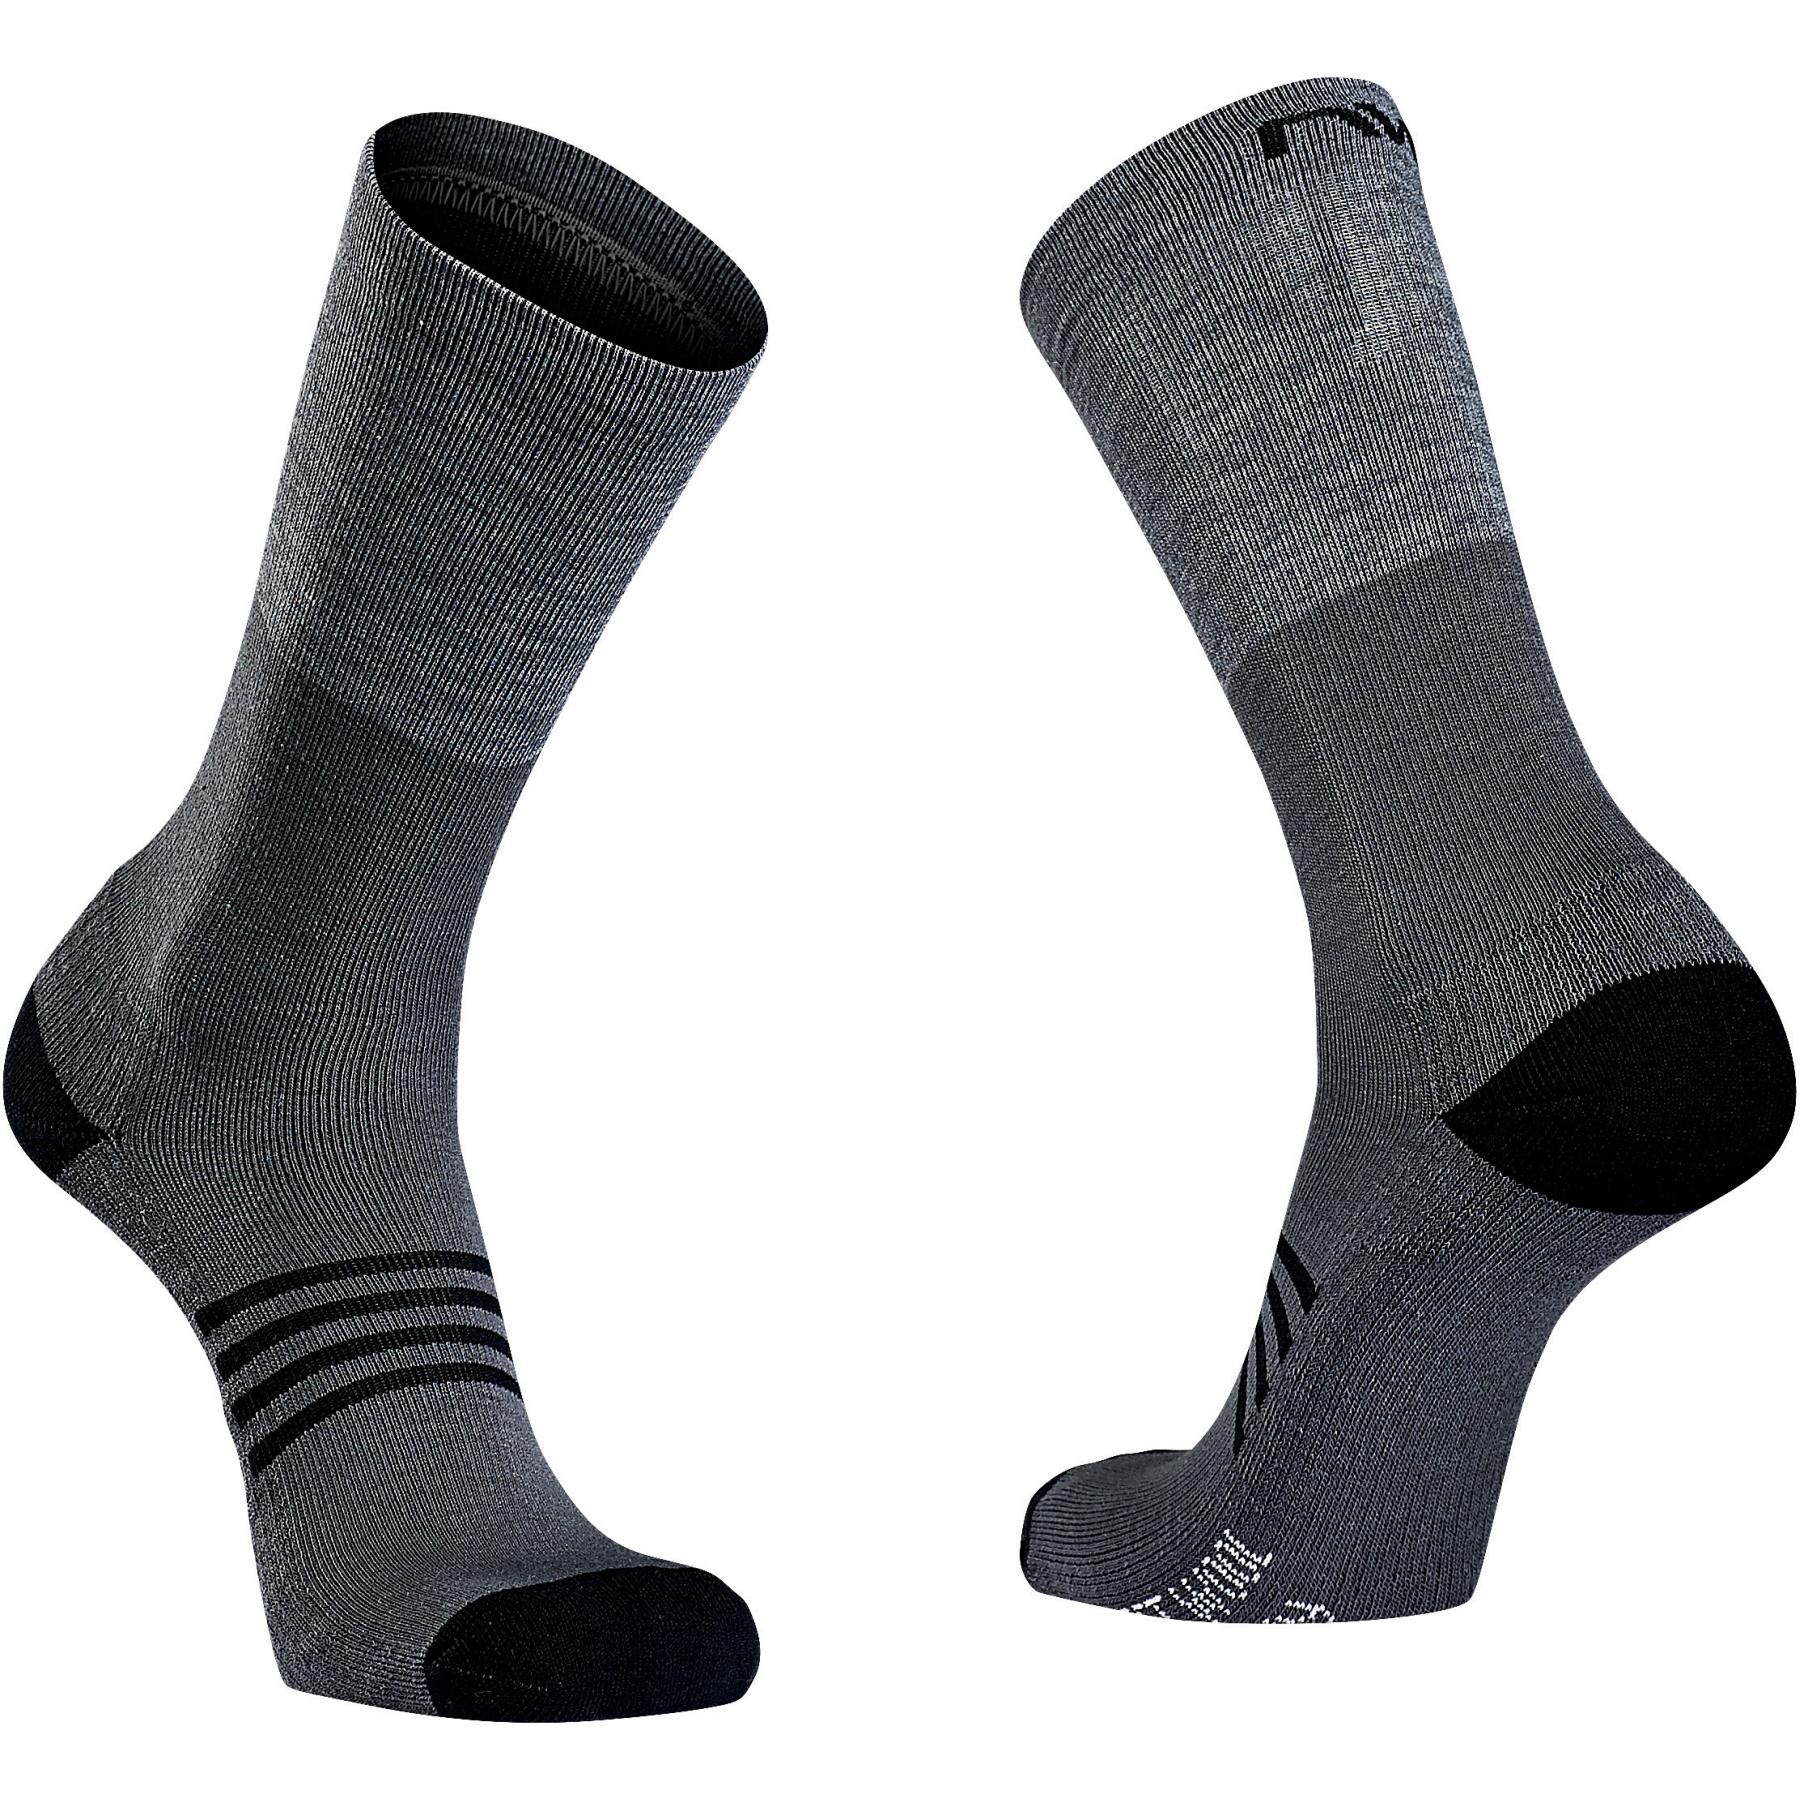 Produktbild von Northwave Extreme Pro High Socken - schwarz 10